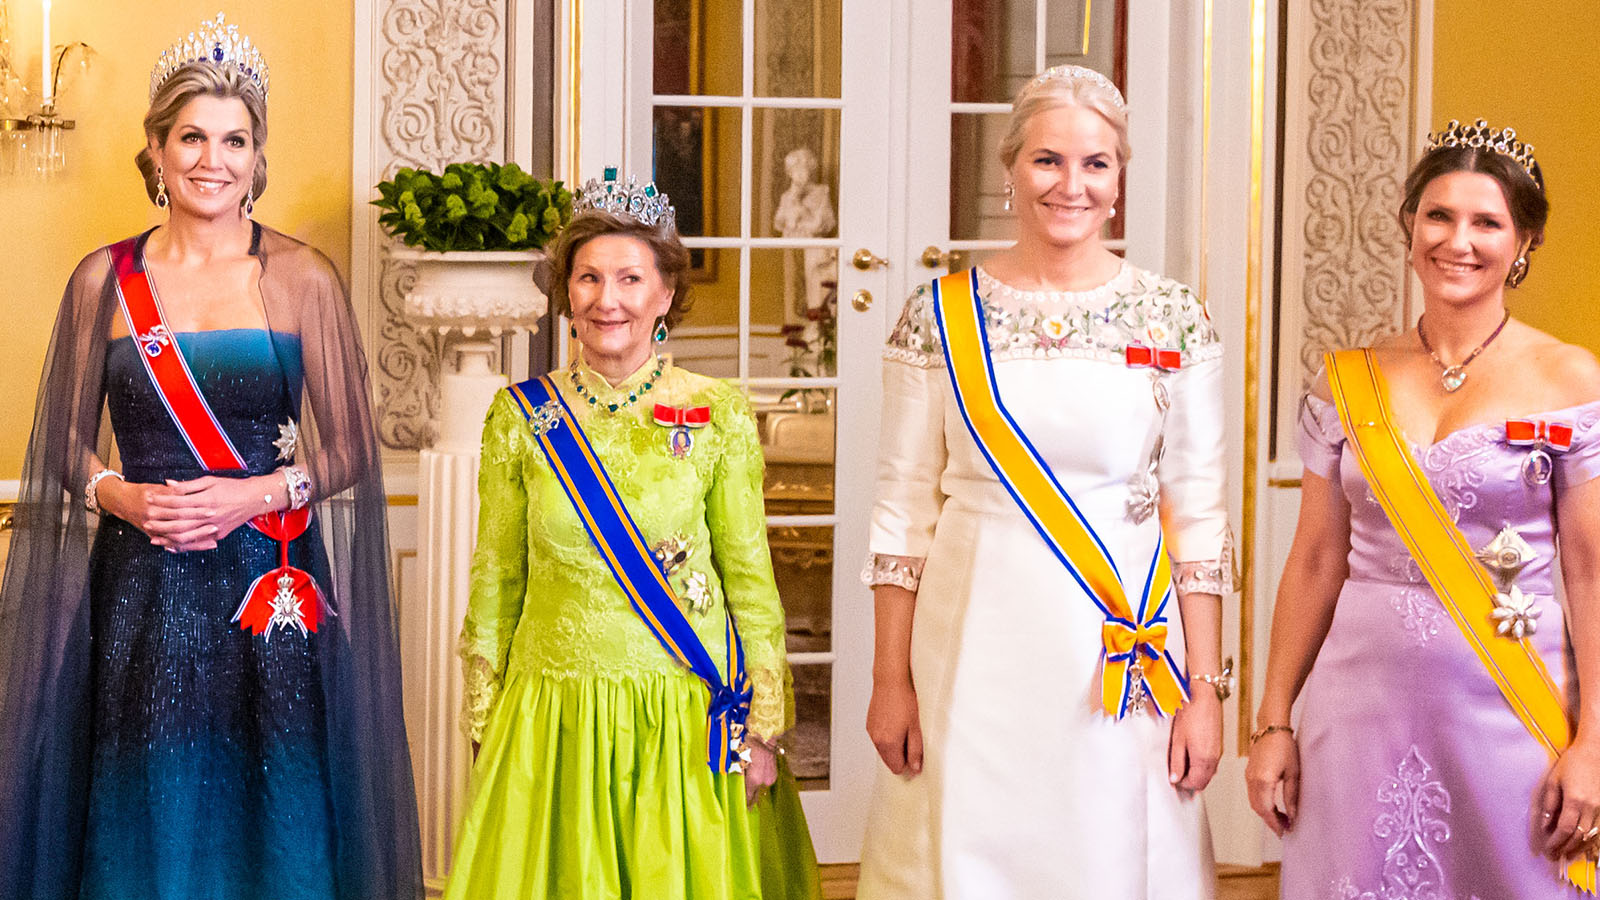 Duelo de tiaras: Máxima de Holanda saca los zafiros y Mette-Marit de Noruega contraataca con brillantes